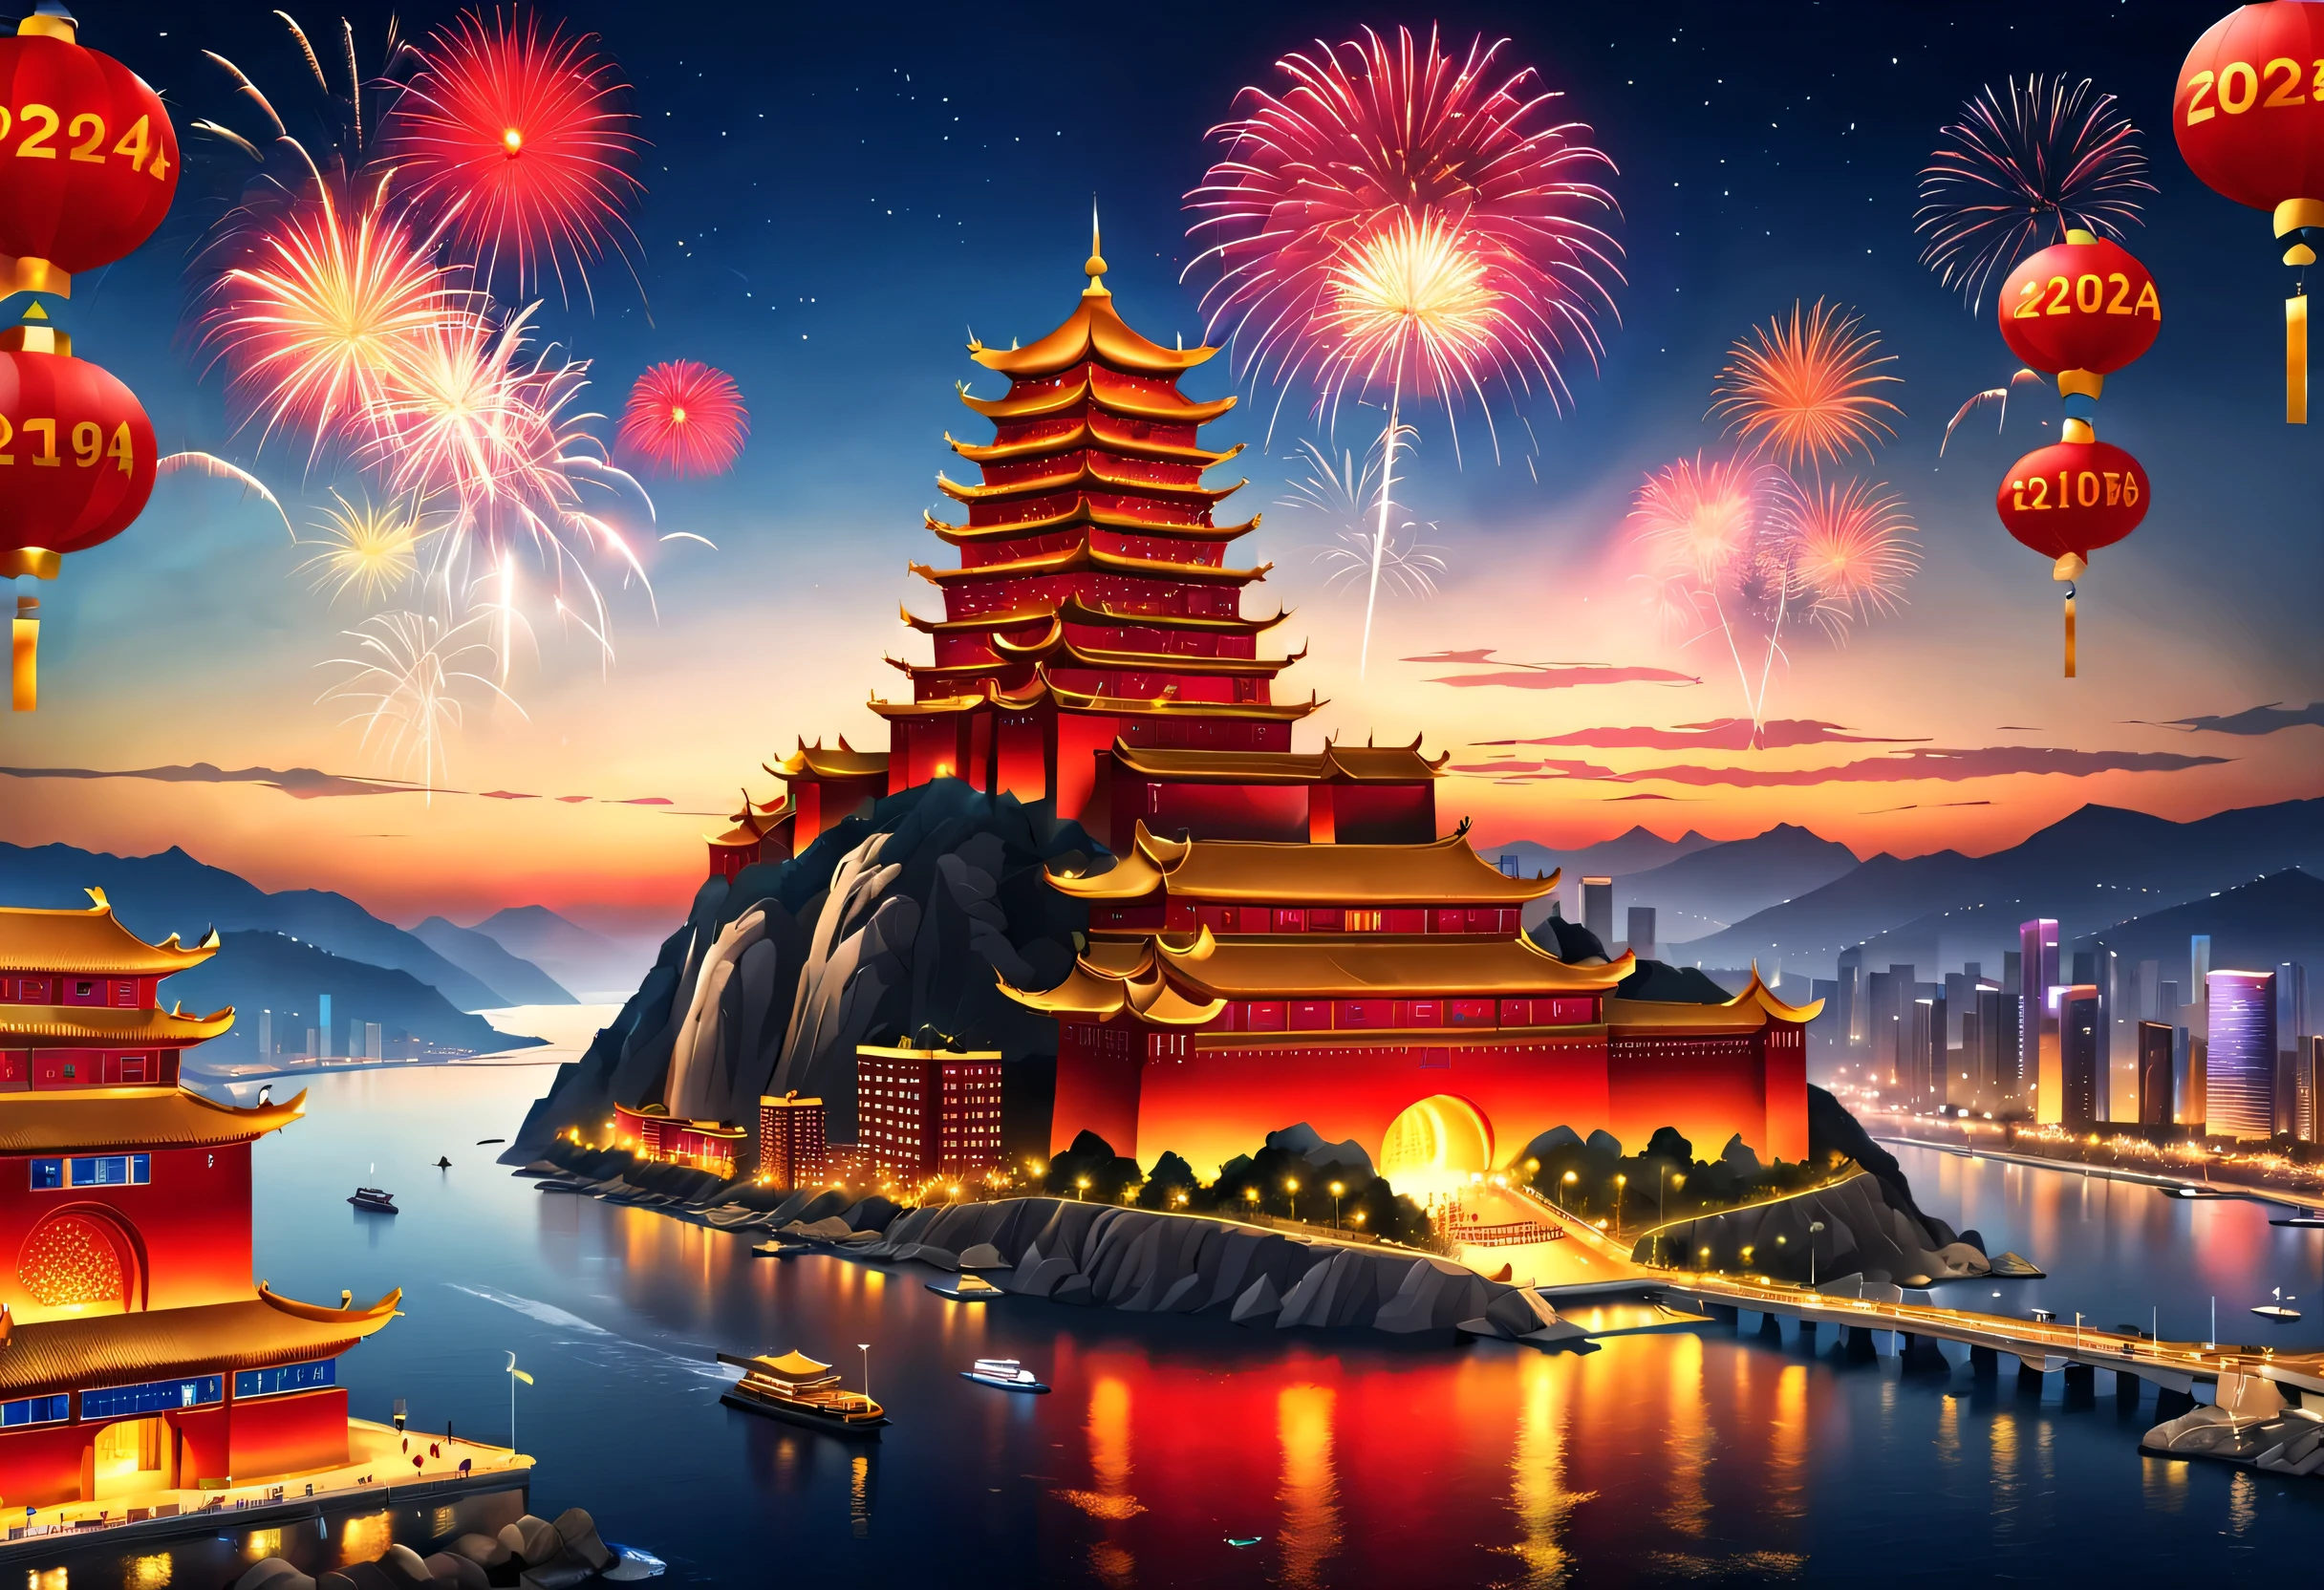 (2024年大晦日のお祝いシーンデザイン), (赤と金のポスターデザイン), (数千マイル離れた青島の海辺の巨大建築群, 中国の巨乳: 1.2), 投影スクリーン, (明けましておめでとうございます: 1.3), 大画面でカウントダウンを見る群衆, 空一面に咲く花火, たくさんのリボンと色とりどりの破片が空に落ちます, 人々&#39;の願い, 背景: 大雪,